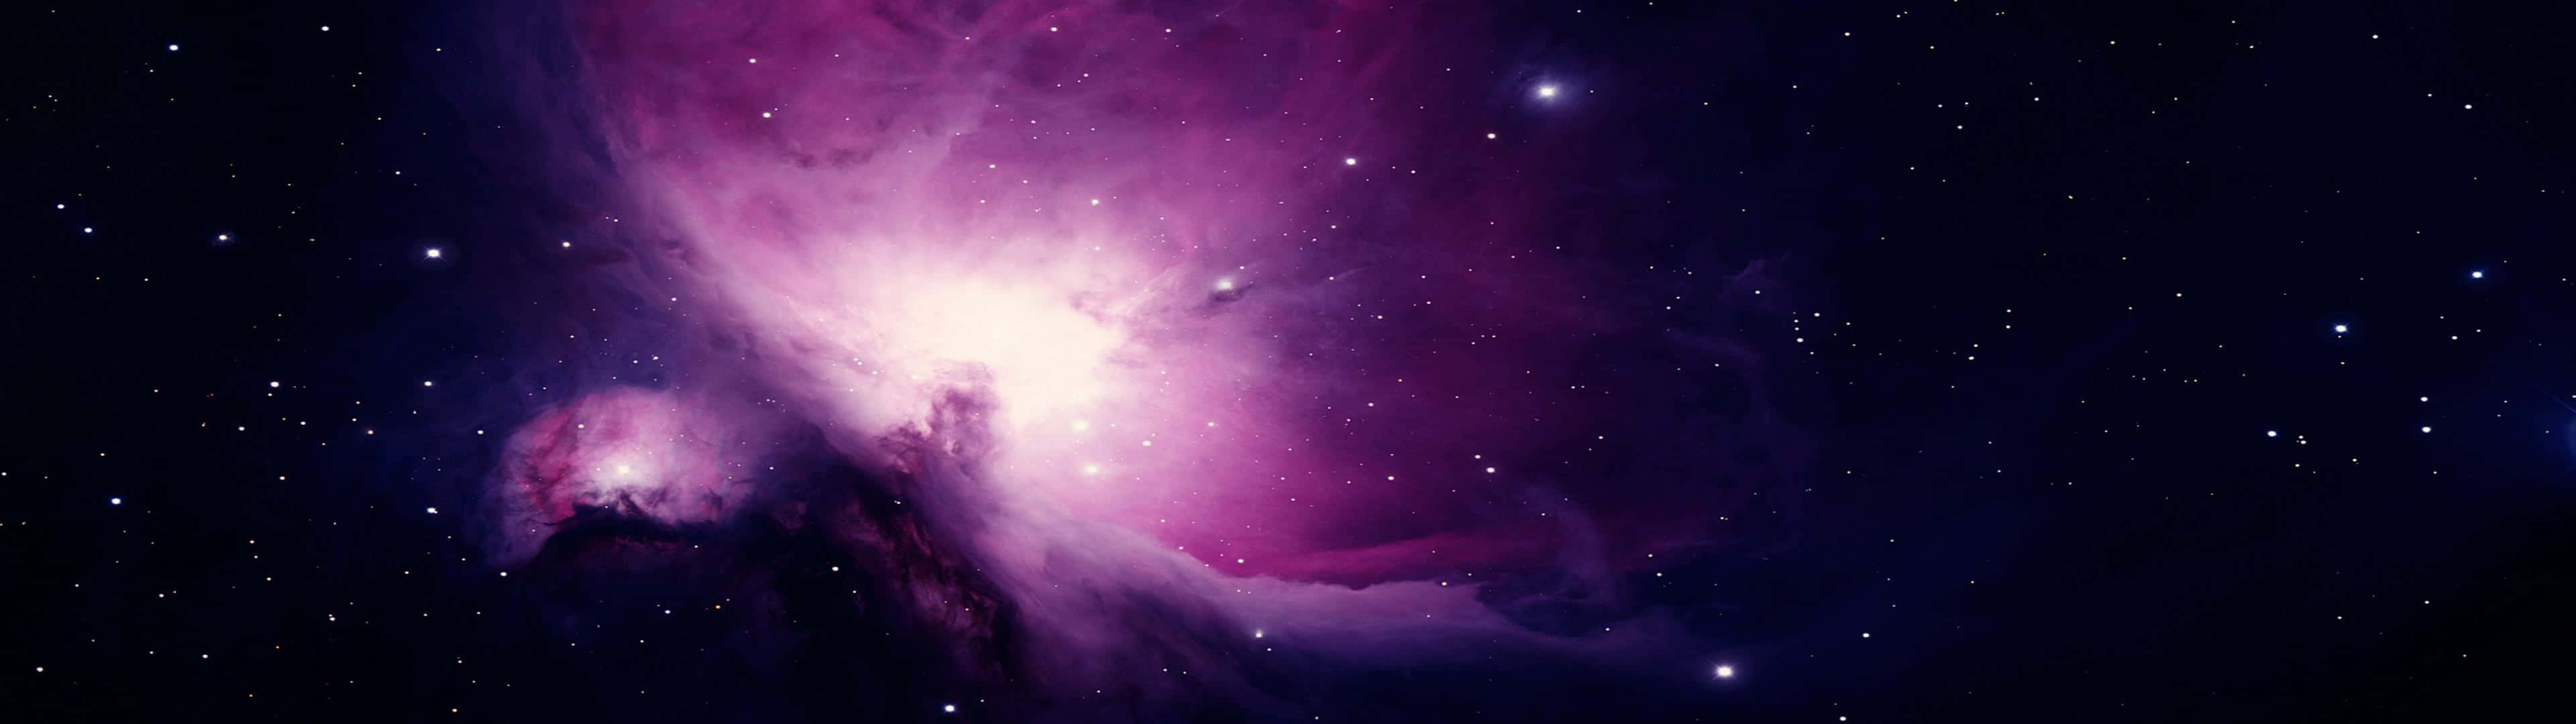 Enlila Nebulosa I Rymden Med Stjärnor Wallpaper